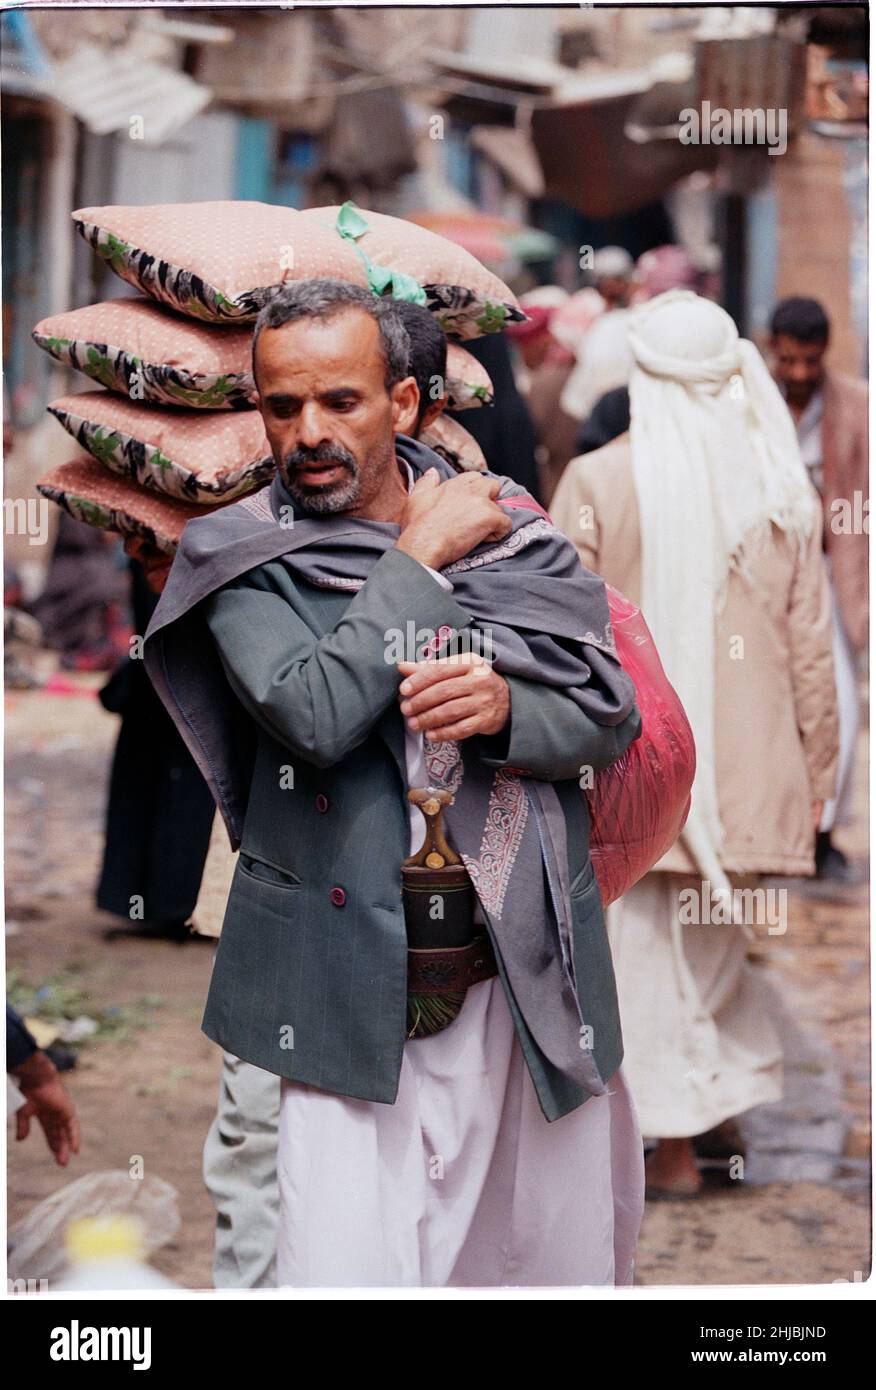 Homme tribal transportant des marchandises à Sana'a, la plus grande ville et capitale du Yémen, pays du Moyen-Orient Banque D'Images